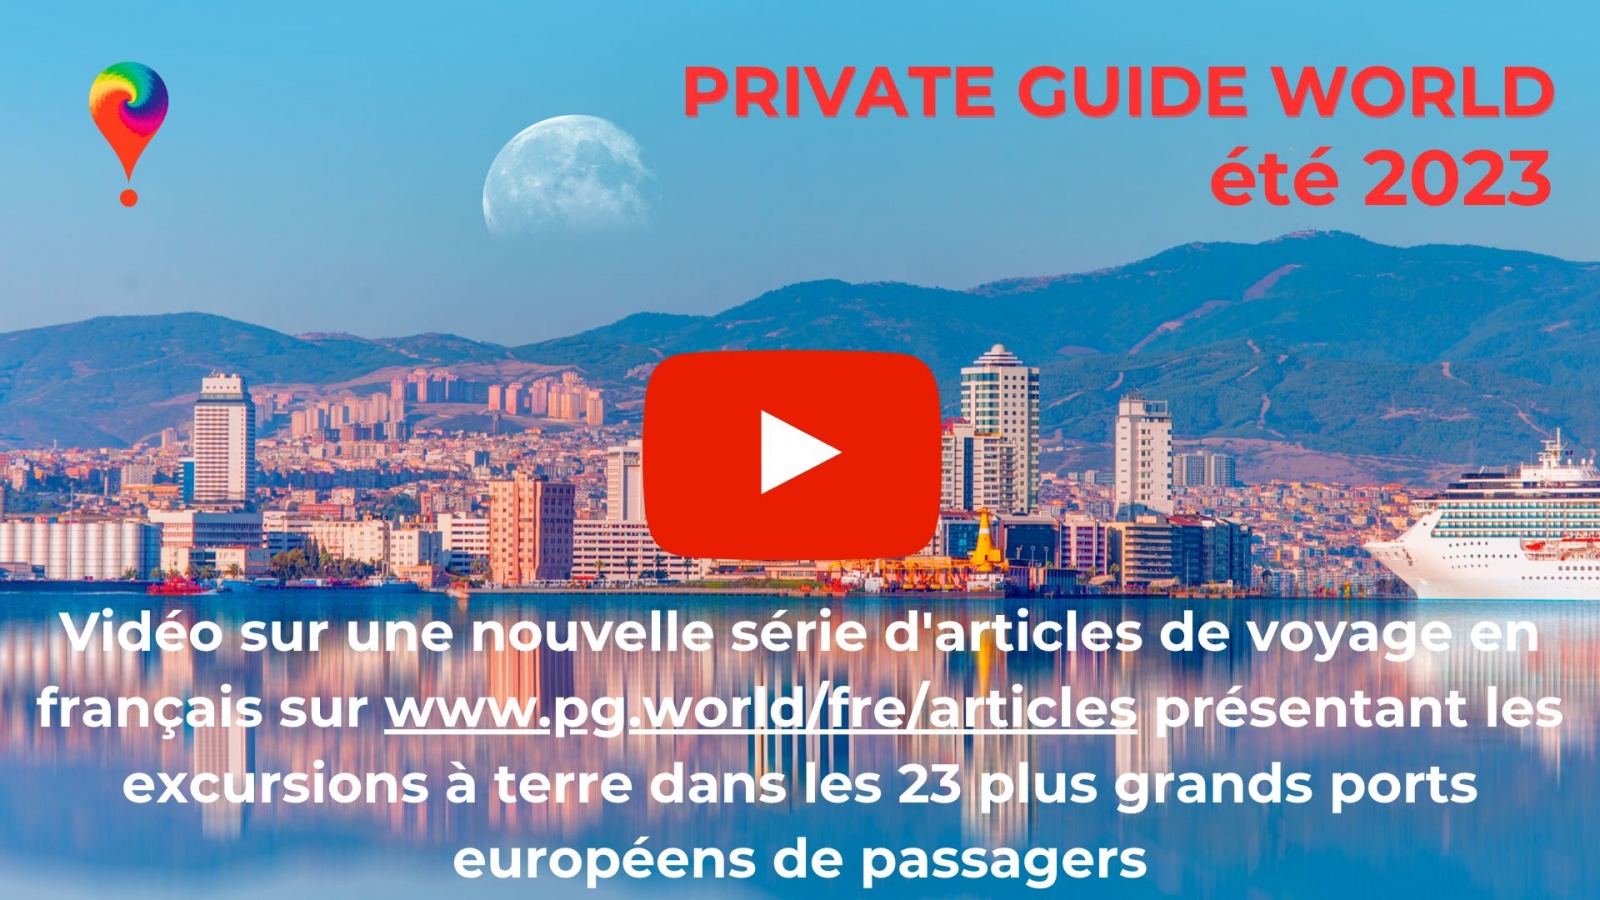 Vidéo sur notre chaîne YouTube @PrivateGuideWorld :: Excursions à terre dans 23 ports passagers d'Europe sur www.pg.world